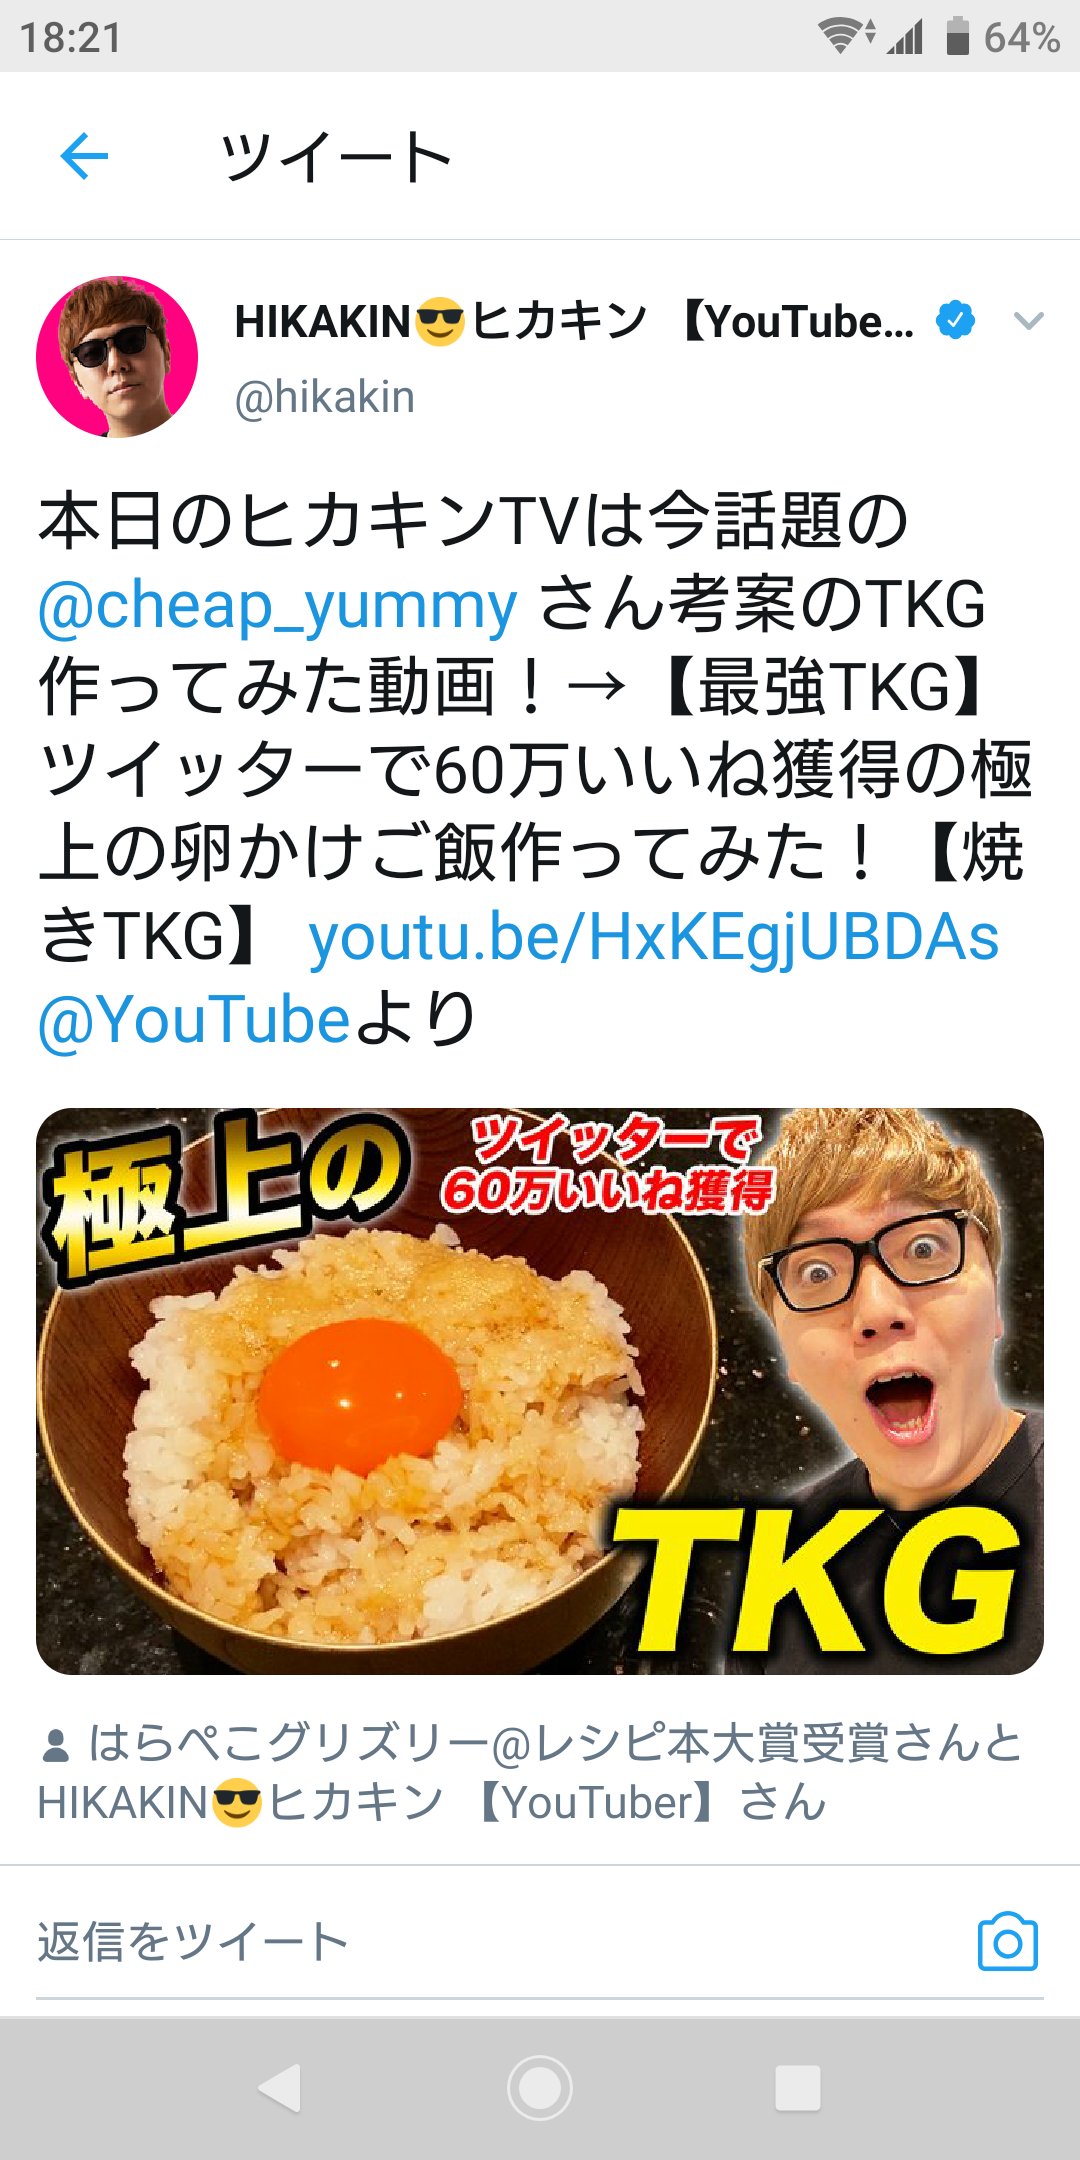 はらぺこグリズリー レシピ本大賞受賞 Auf Twitter 超人気youtuberのヒカキンさんが僕のレシピで卵かけご飯を作ってくださいました すごく嬉しいです Twitter